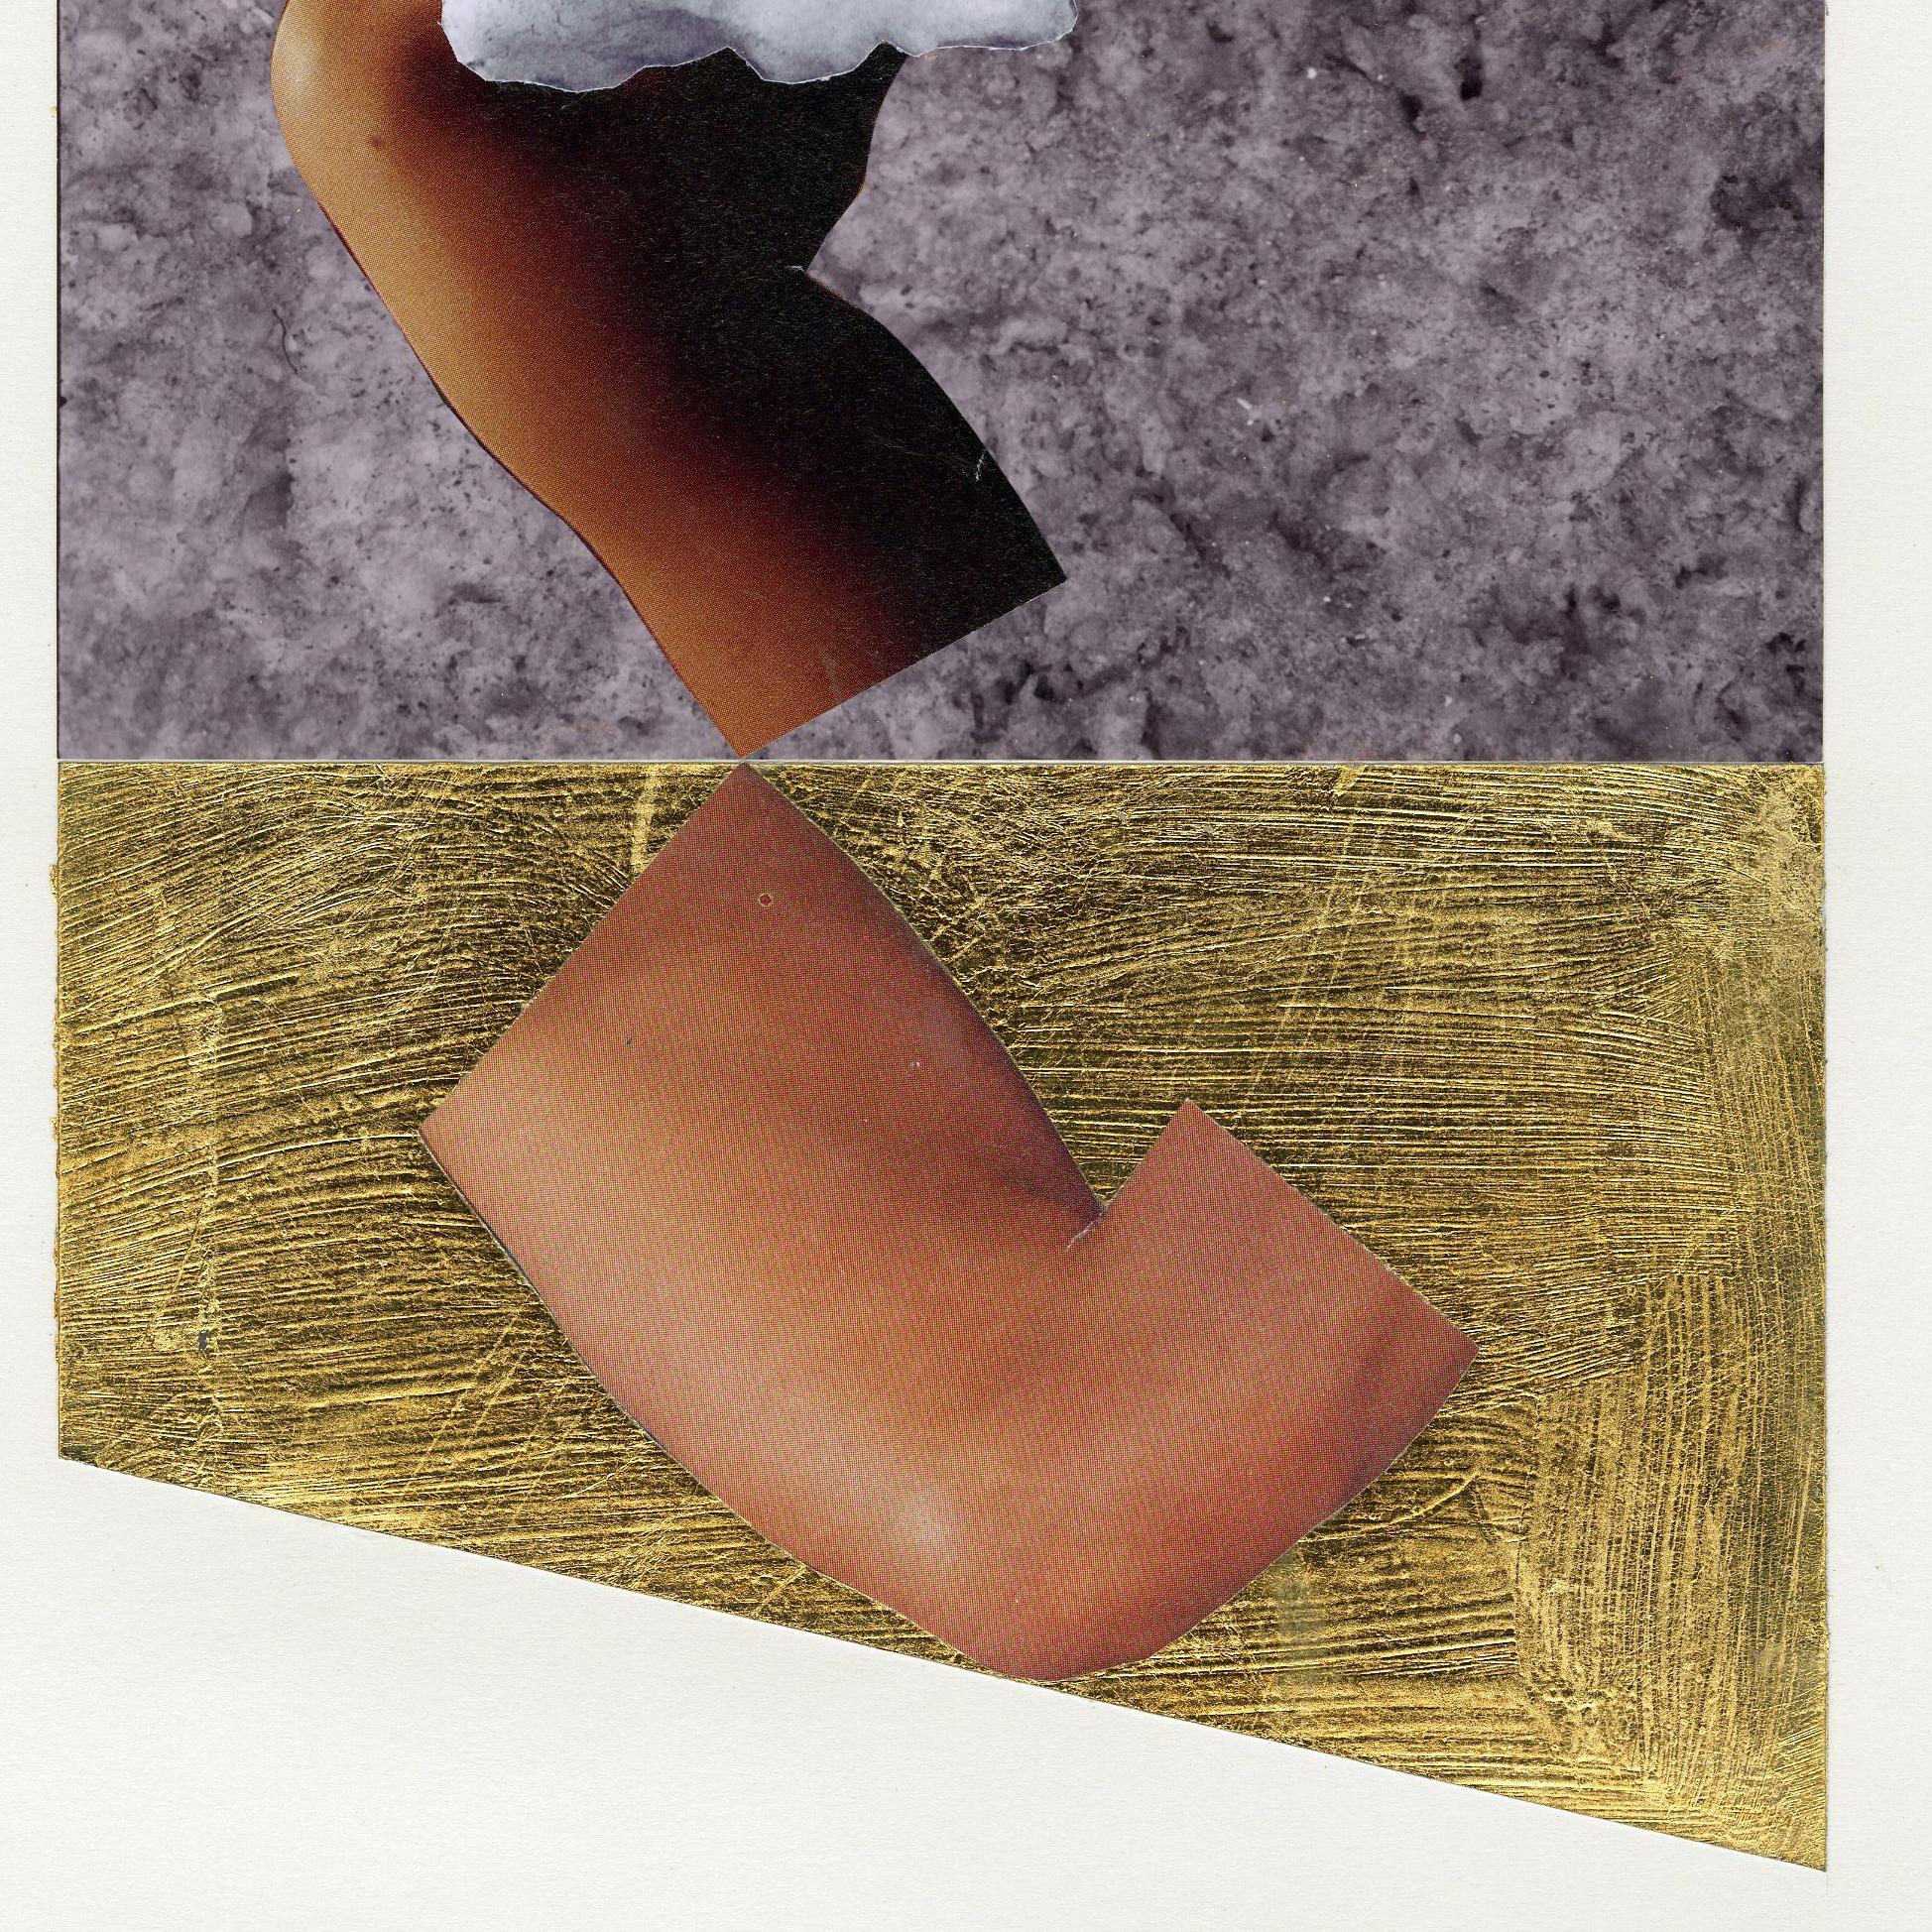 Photographie, feuille d'or et collage de magazines en techniques mixtes

Non signé

Provenance :

Succession de l'artiste

Feuille : 16 x 14